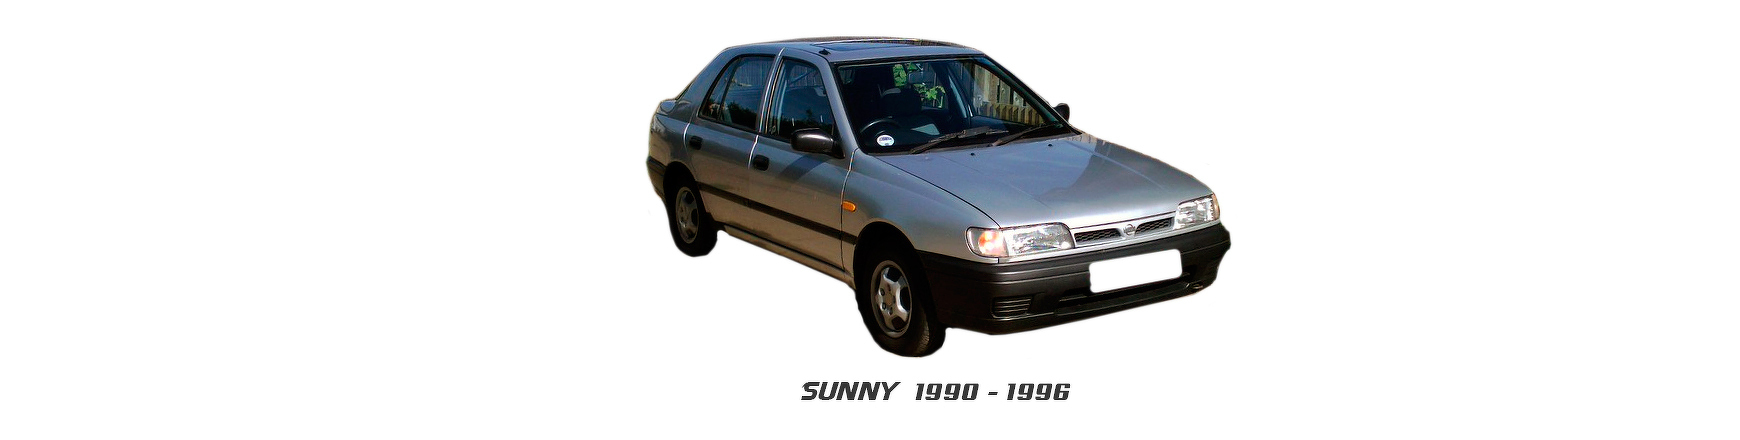 Recambios de Nissan Sunny al mejor precio y con envio.